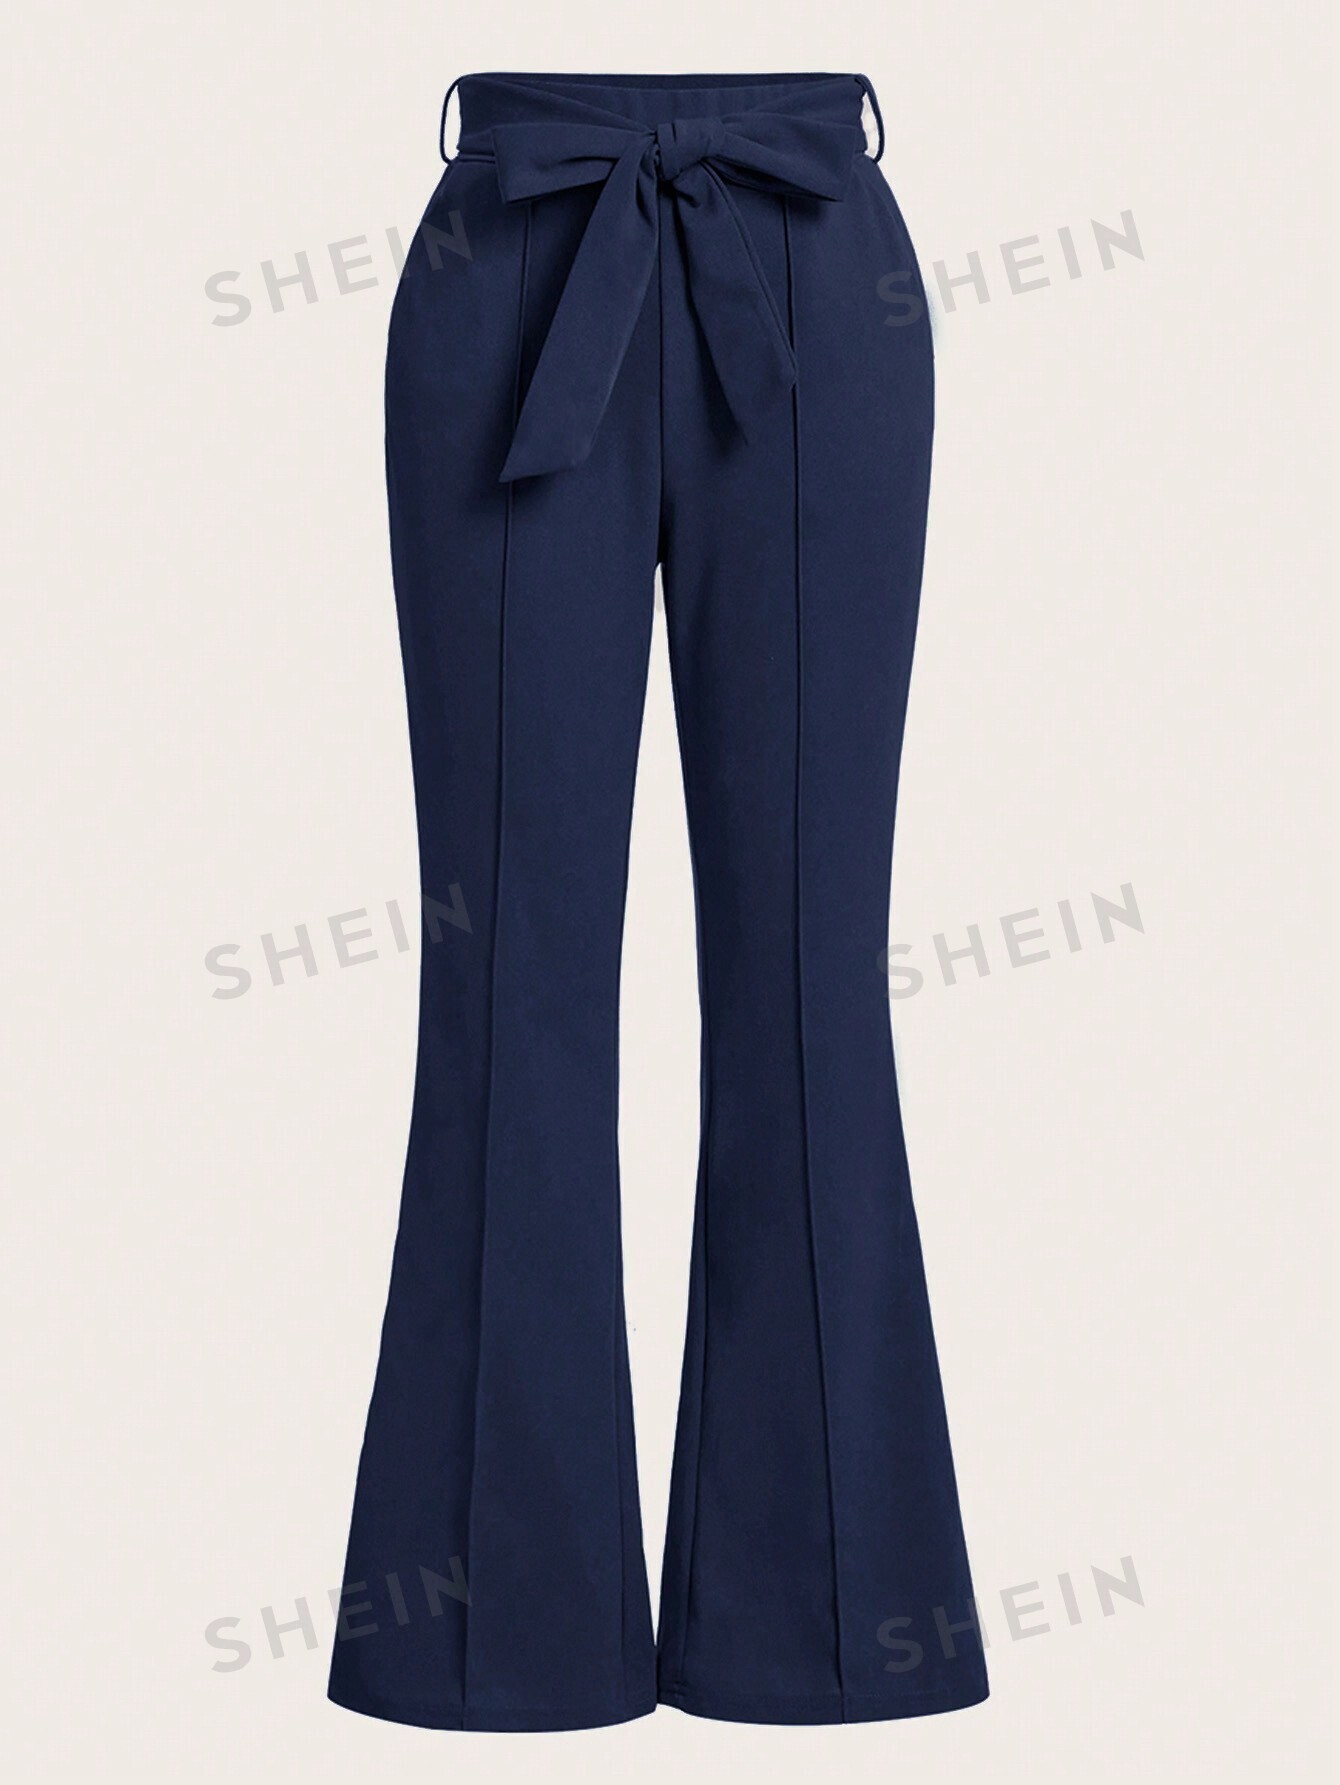 SHEIN Clasi Женские брюки однотонного цвета с расклешенным низом, темно-синий женские расклешенные брюки на шнурке 3 цвета